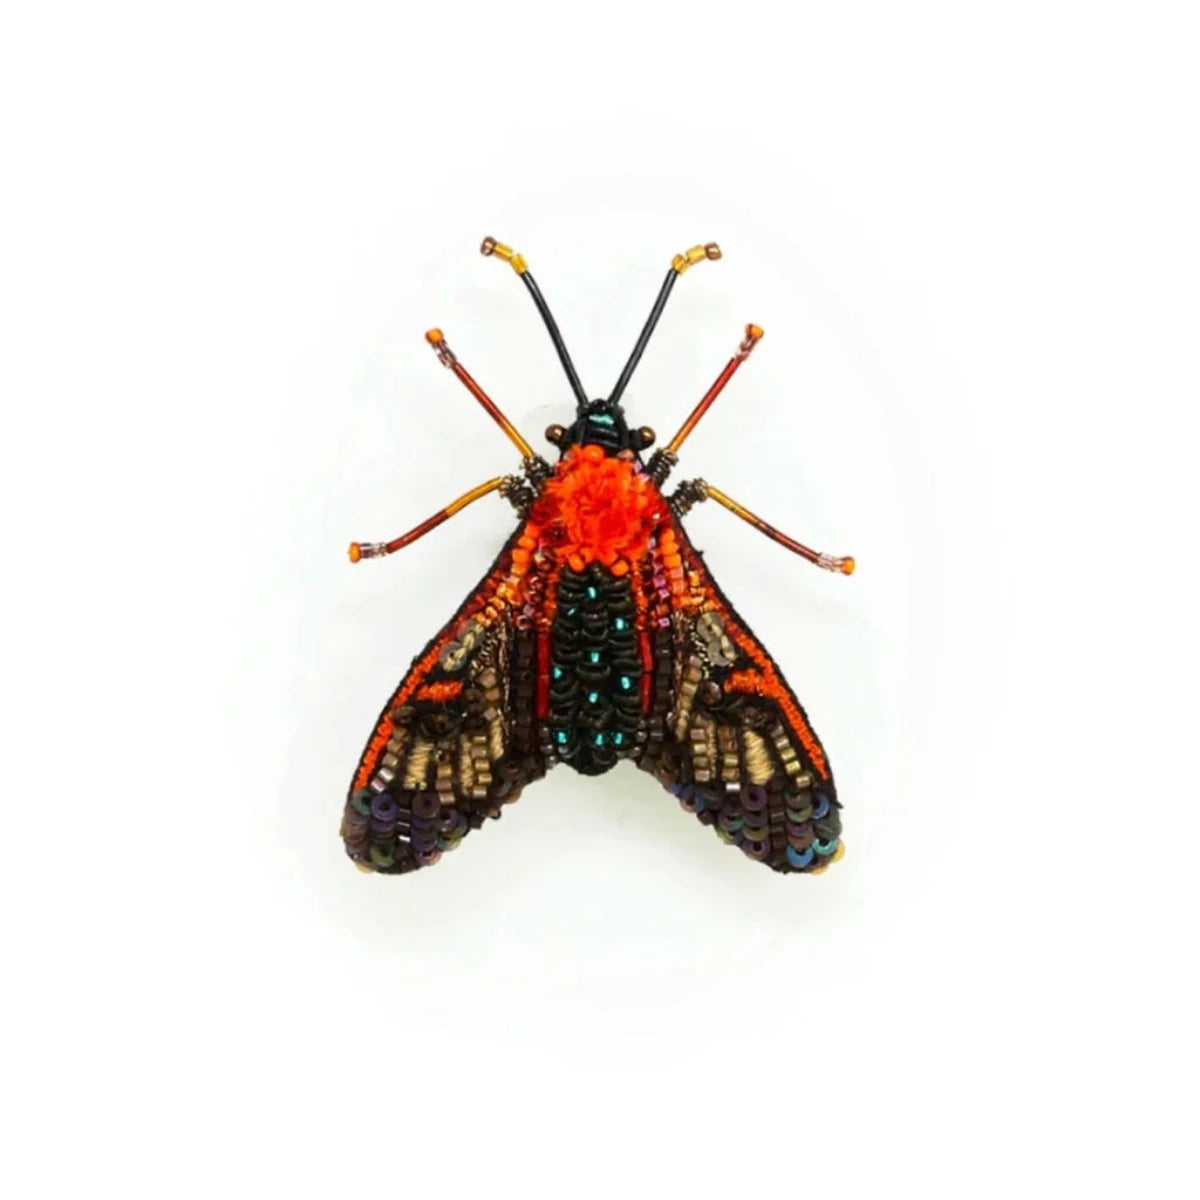 Cosmos Moth Brooch Pin